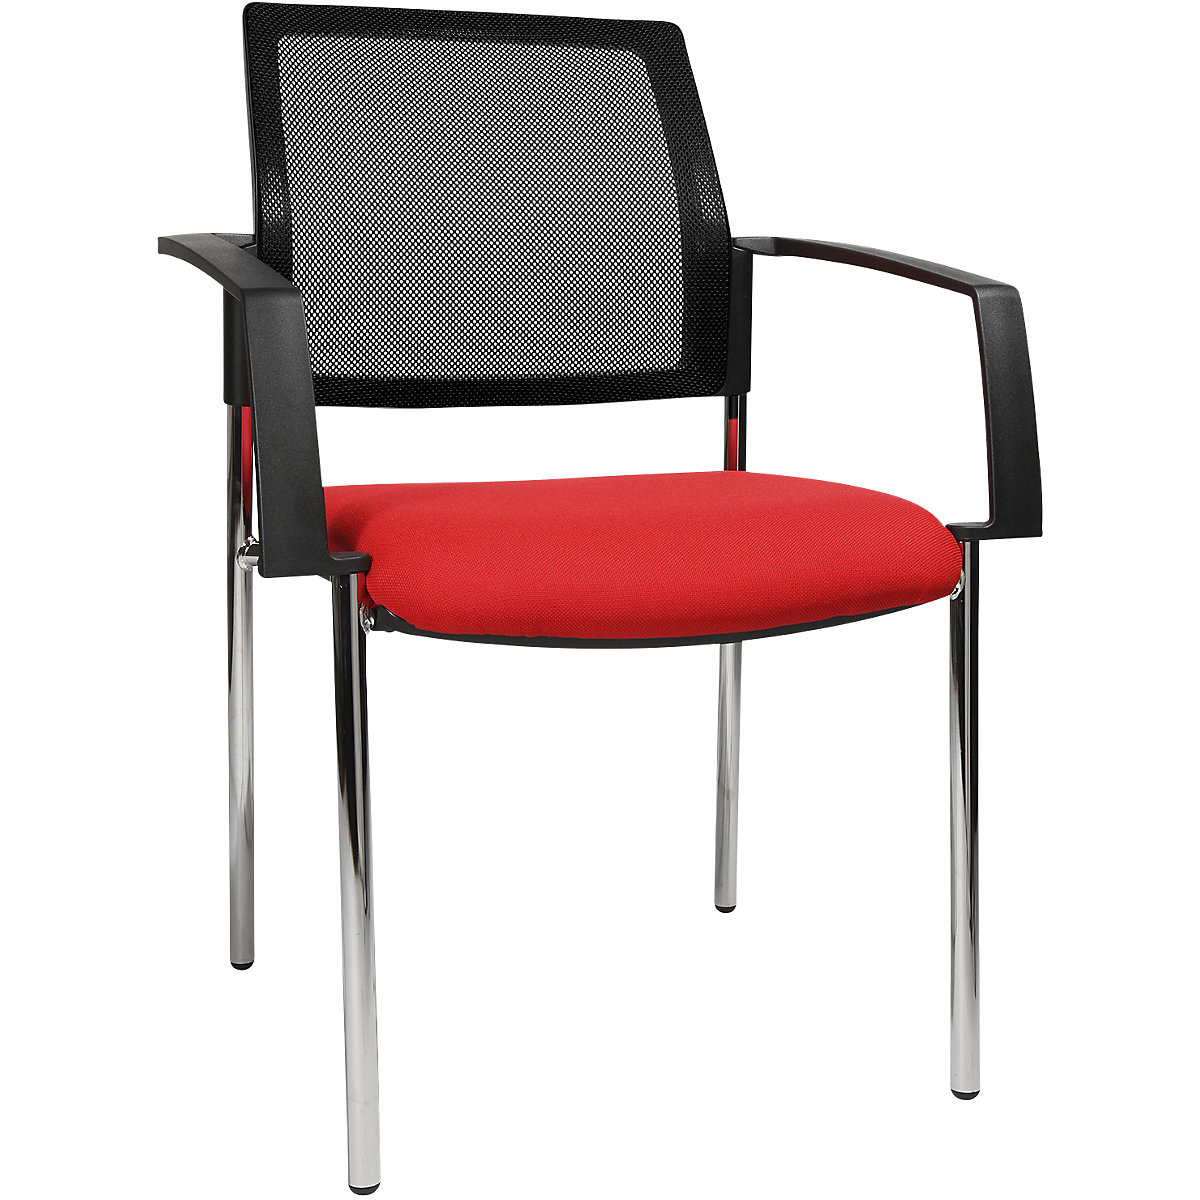 Složiva stolica s mrežastim naslonom – Topstar, 4 noge, pak. 2 kom., sjedalo u crvenoj boji, kromirano postolje